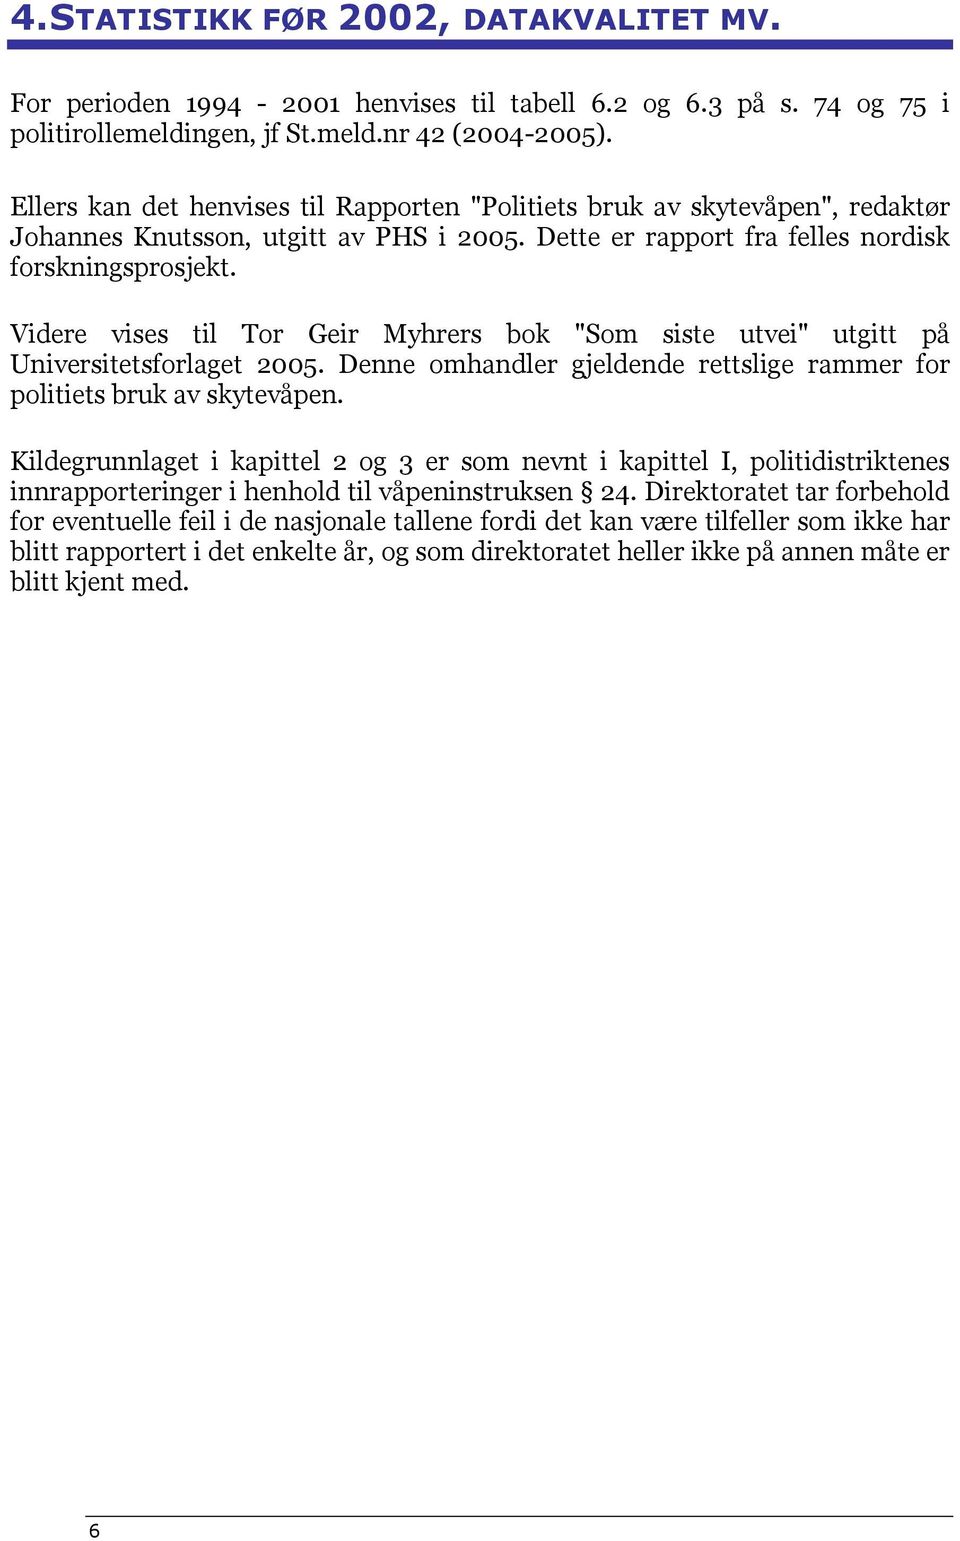 Videre vises til Tor Geir Myhrers bok "Som siste utvei" utgitt på Universitetsforlaget 2005. Denne omhandler gjeldende rettslige rammer for politiets bruk av skytevåpen.